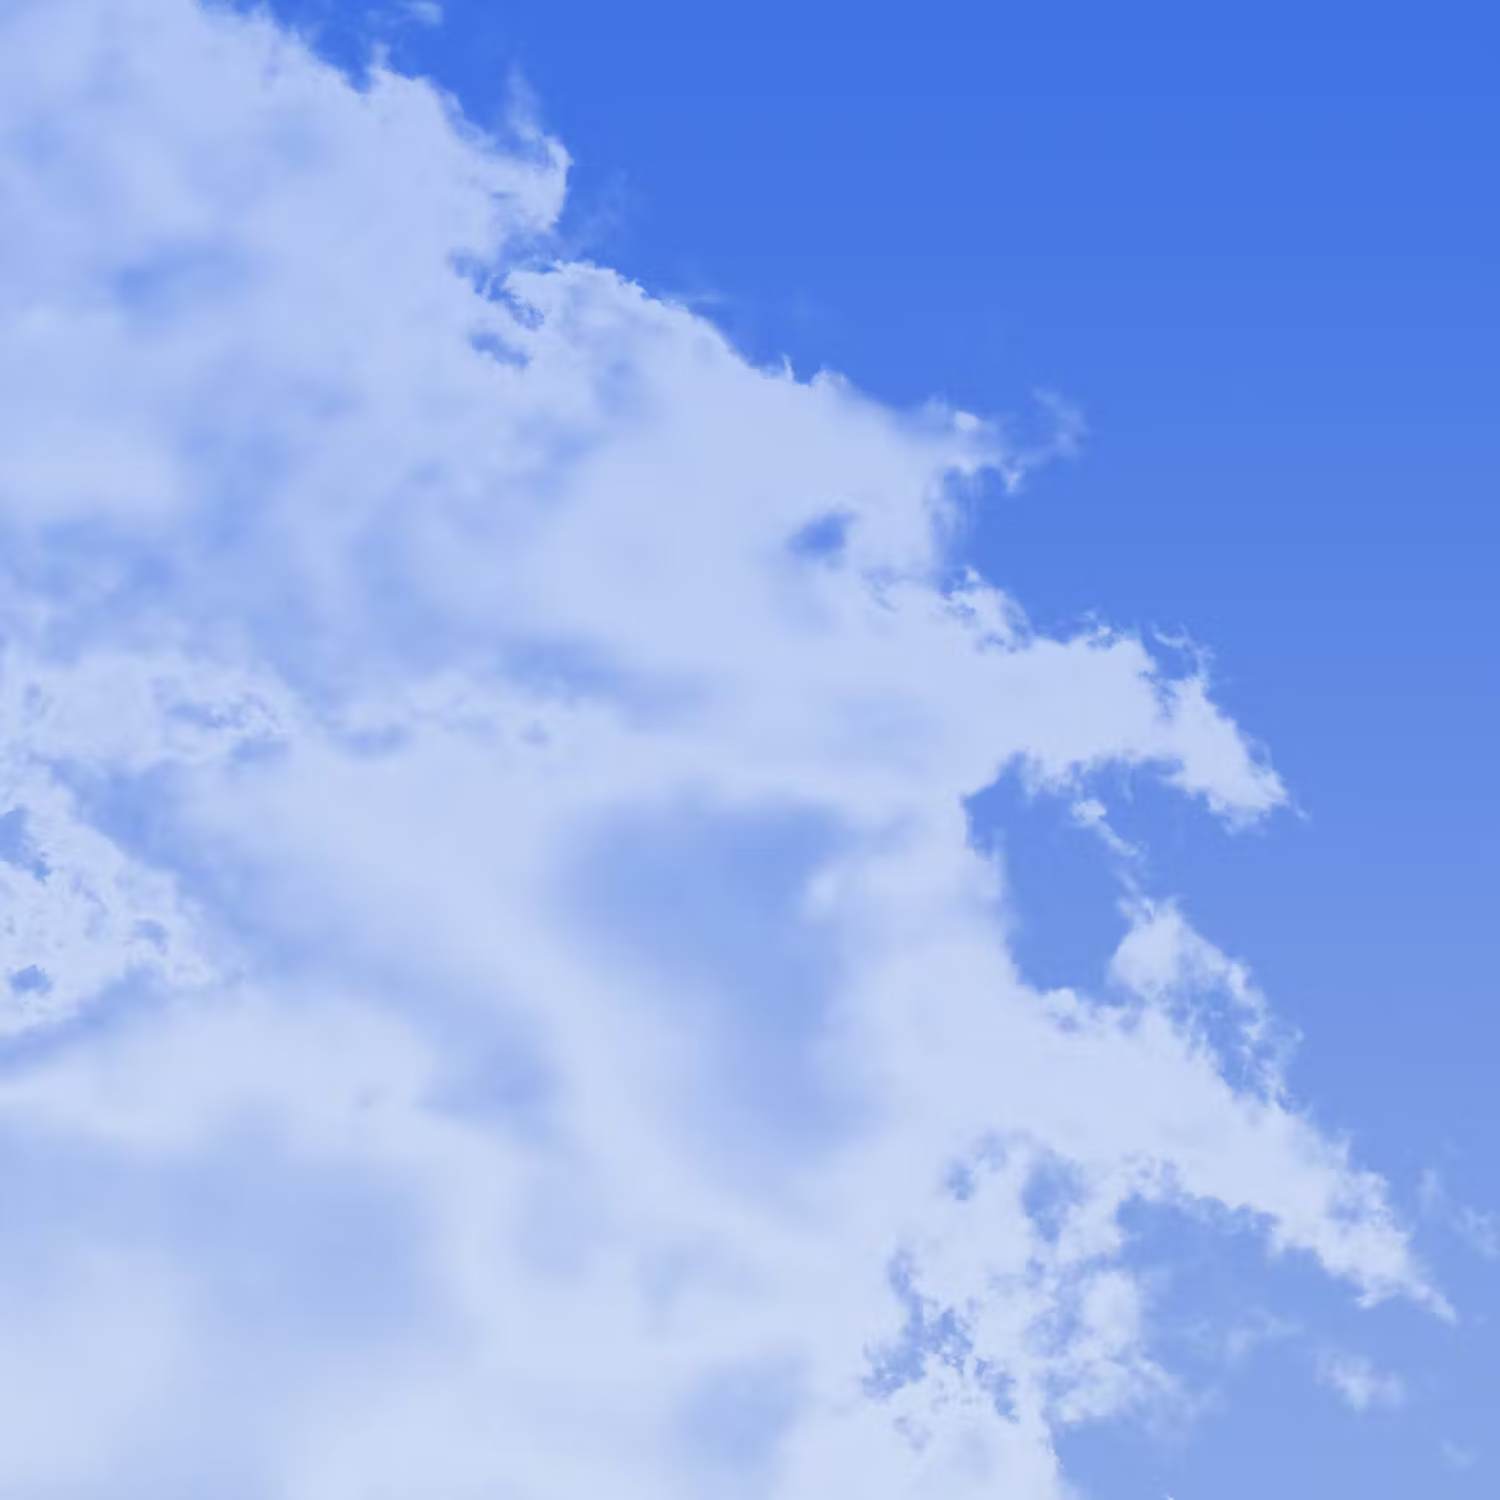 6009 高分辨率创意云朵背景素材-Clouds Backgrounds